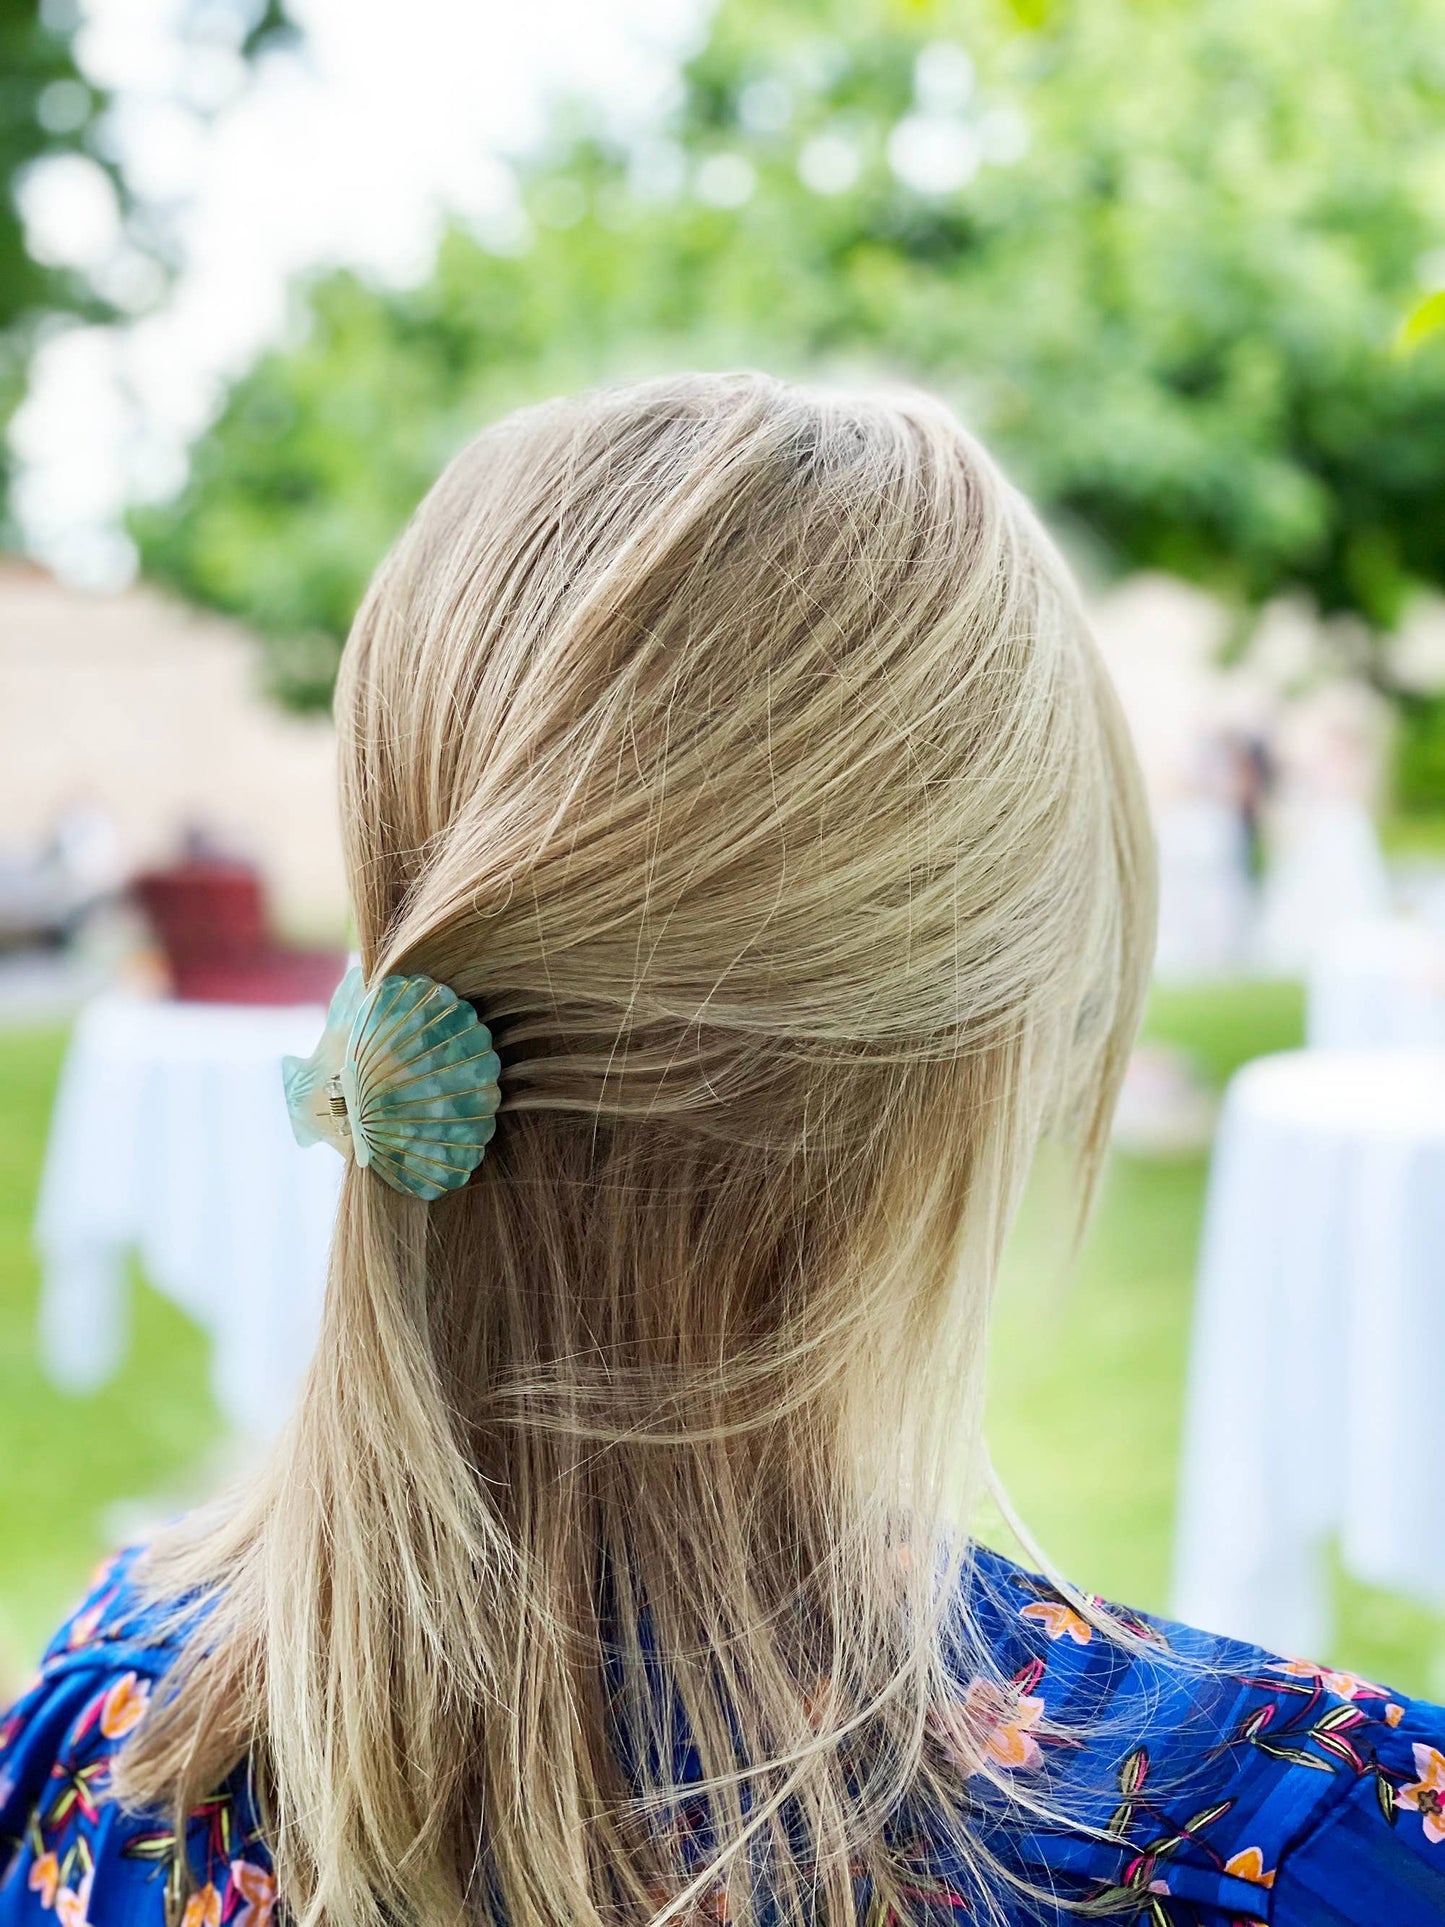 Shell hair clip blue